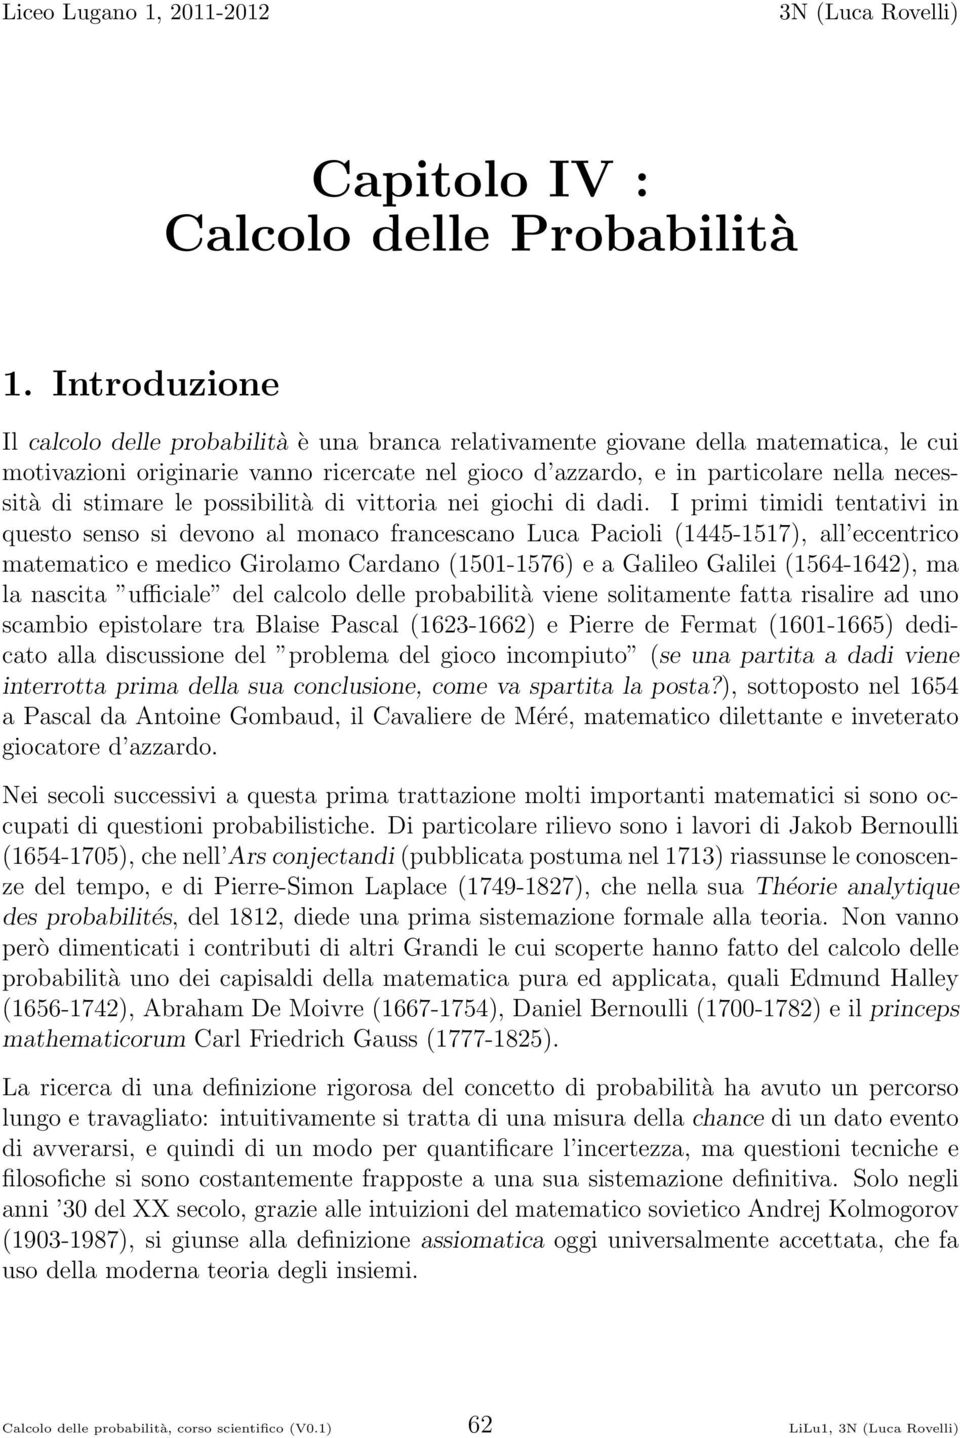 francescano Luca Pacioli (445-57), all eccentrico matematico e medico Girolamo Cardano (50-576) e a Galileo Galilei (564-64), ma la nascita ufficiale del calcolo delle probabilità viene solitamente